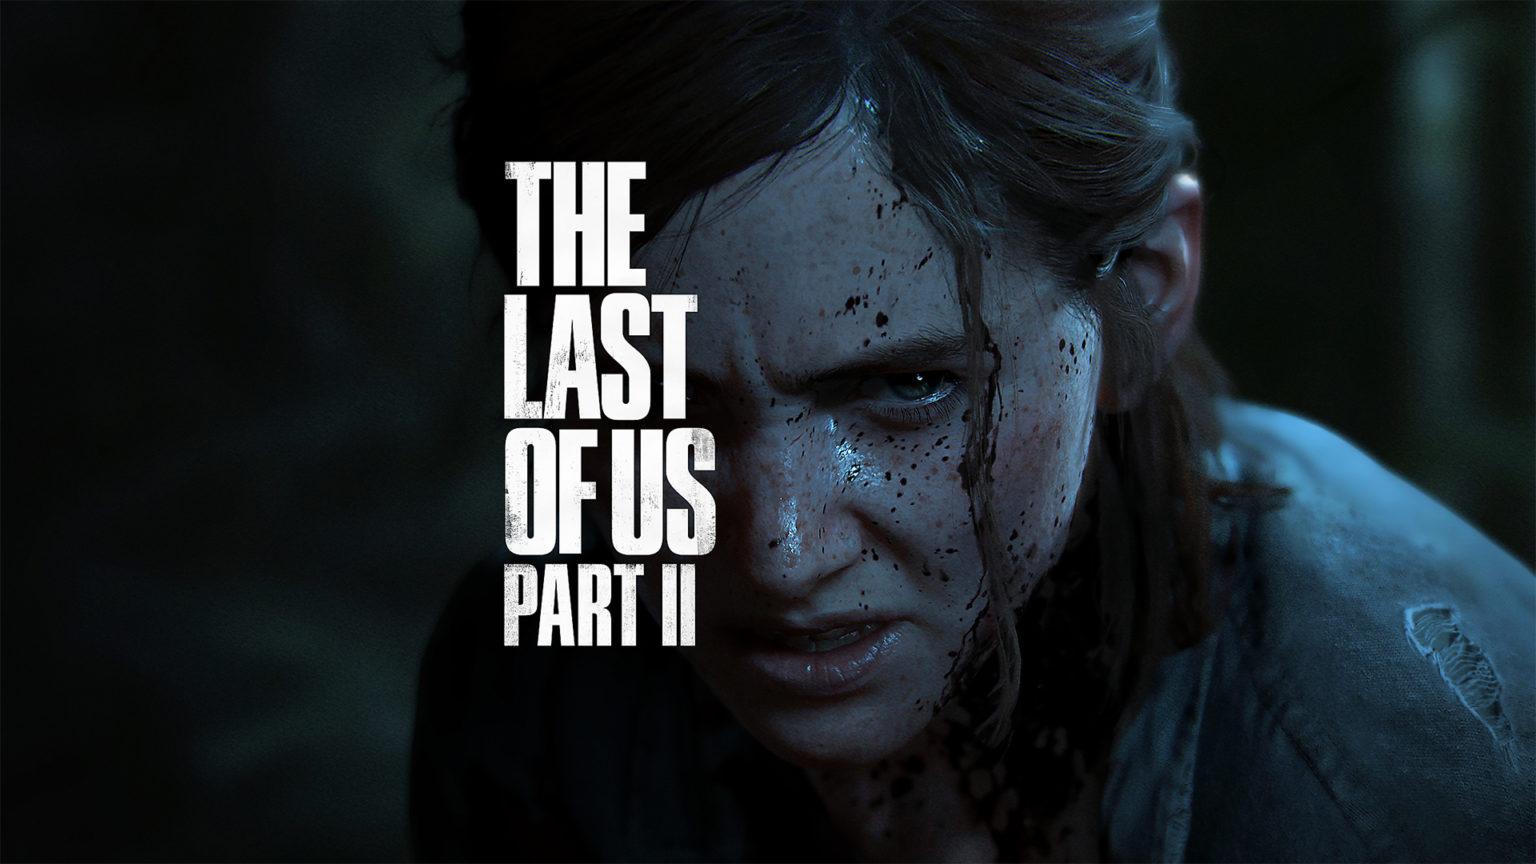 Episódio 4 de The Last of Us: veja prévia divulgada pela HBO